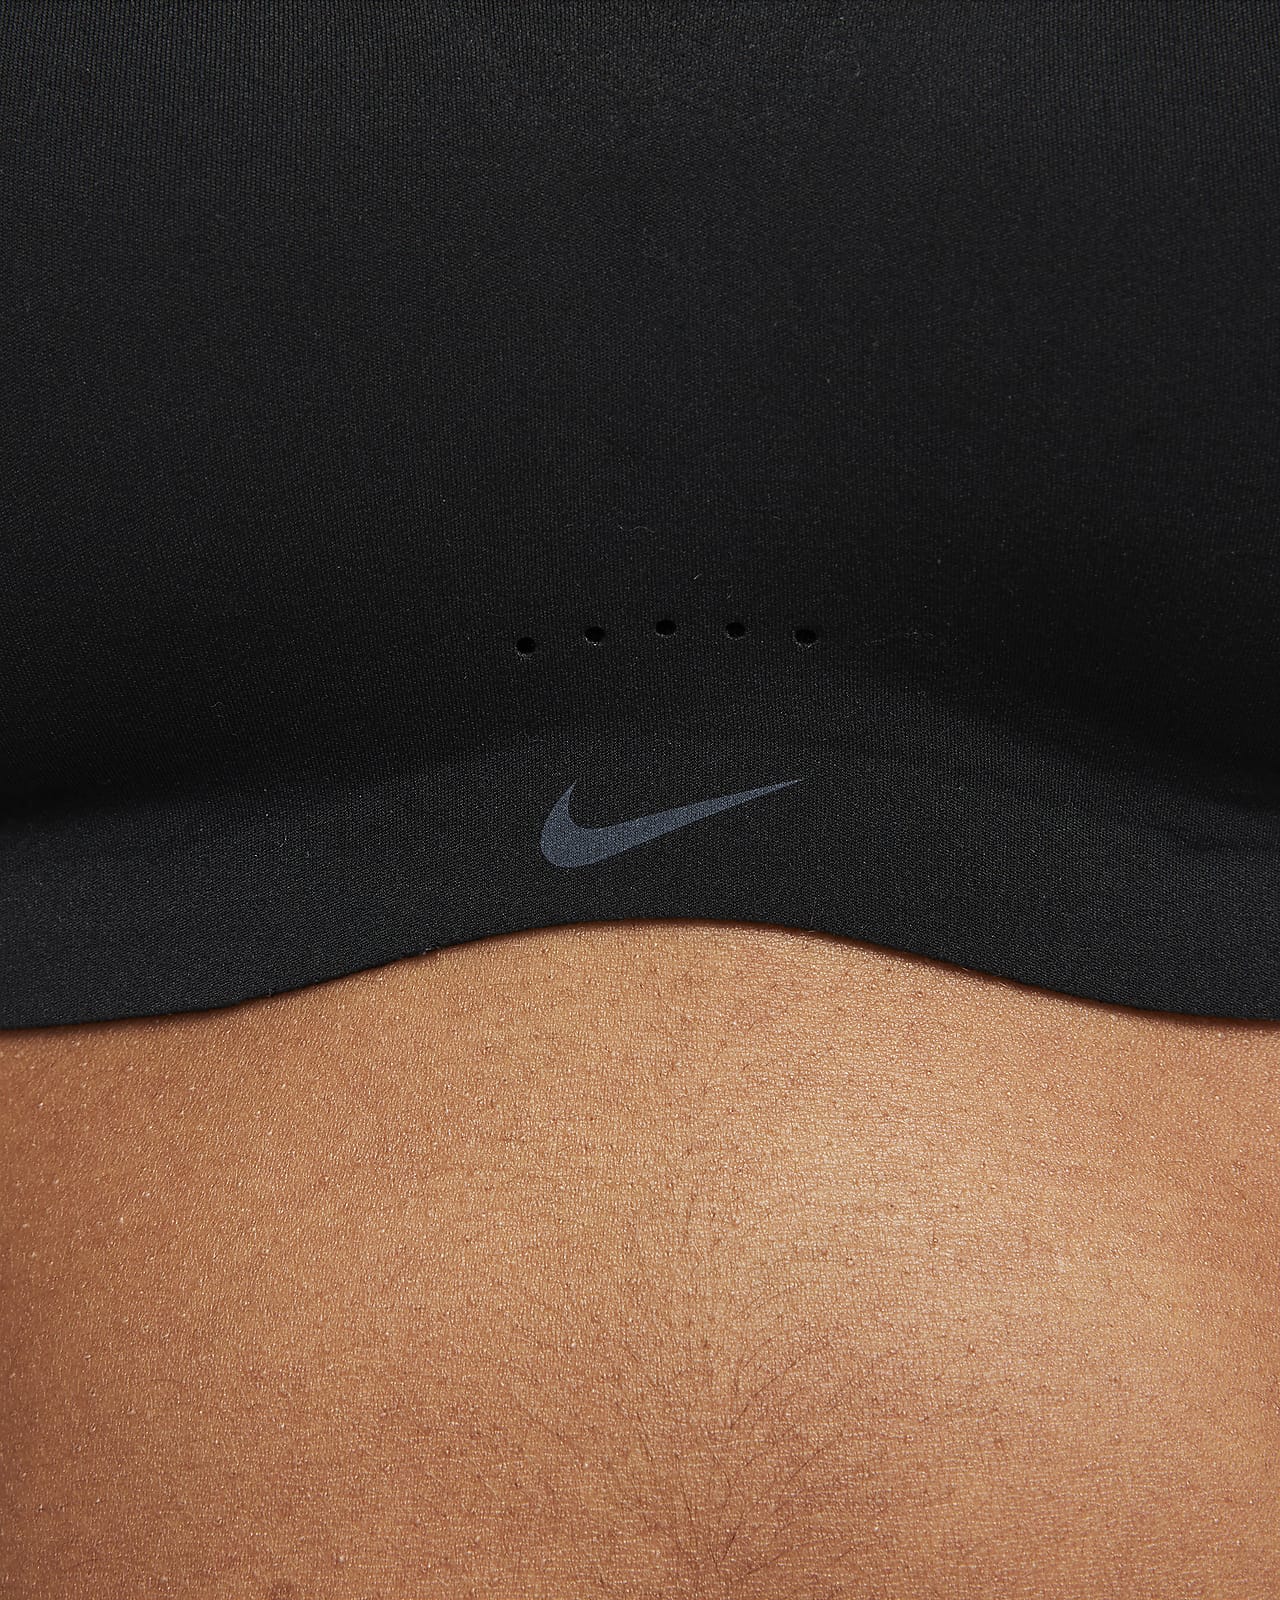 Nike Dri-FIT ​Alate Minimalist Light-Support Padded Sports Bra